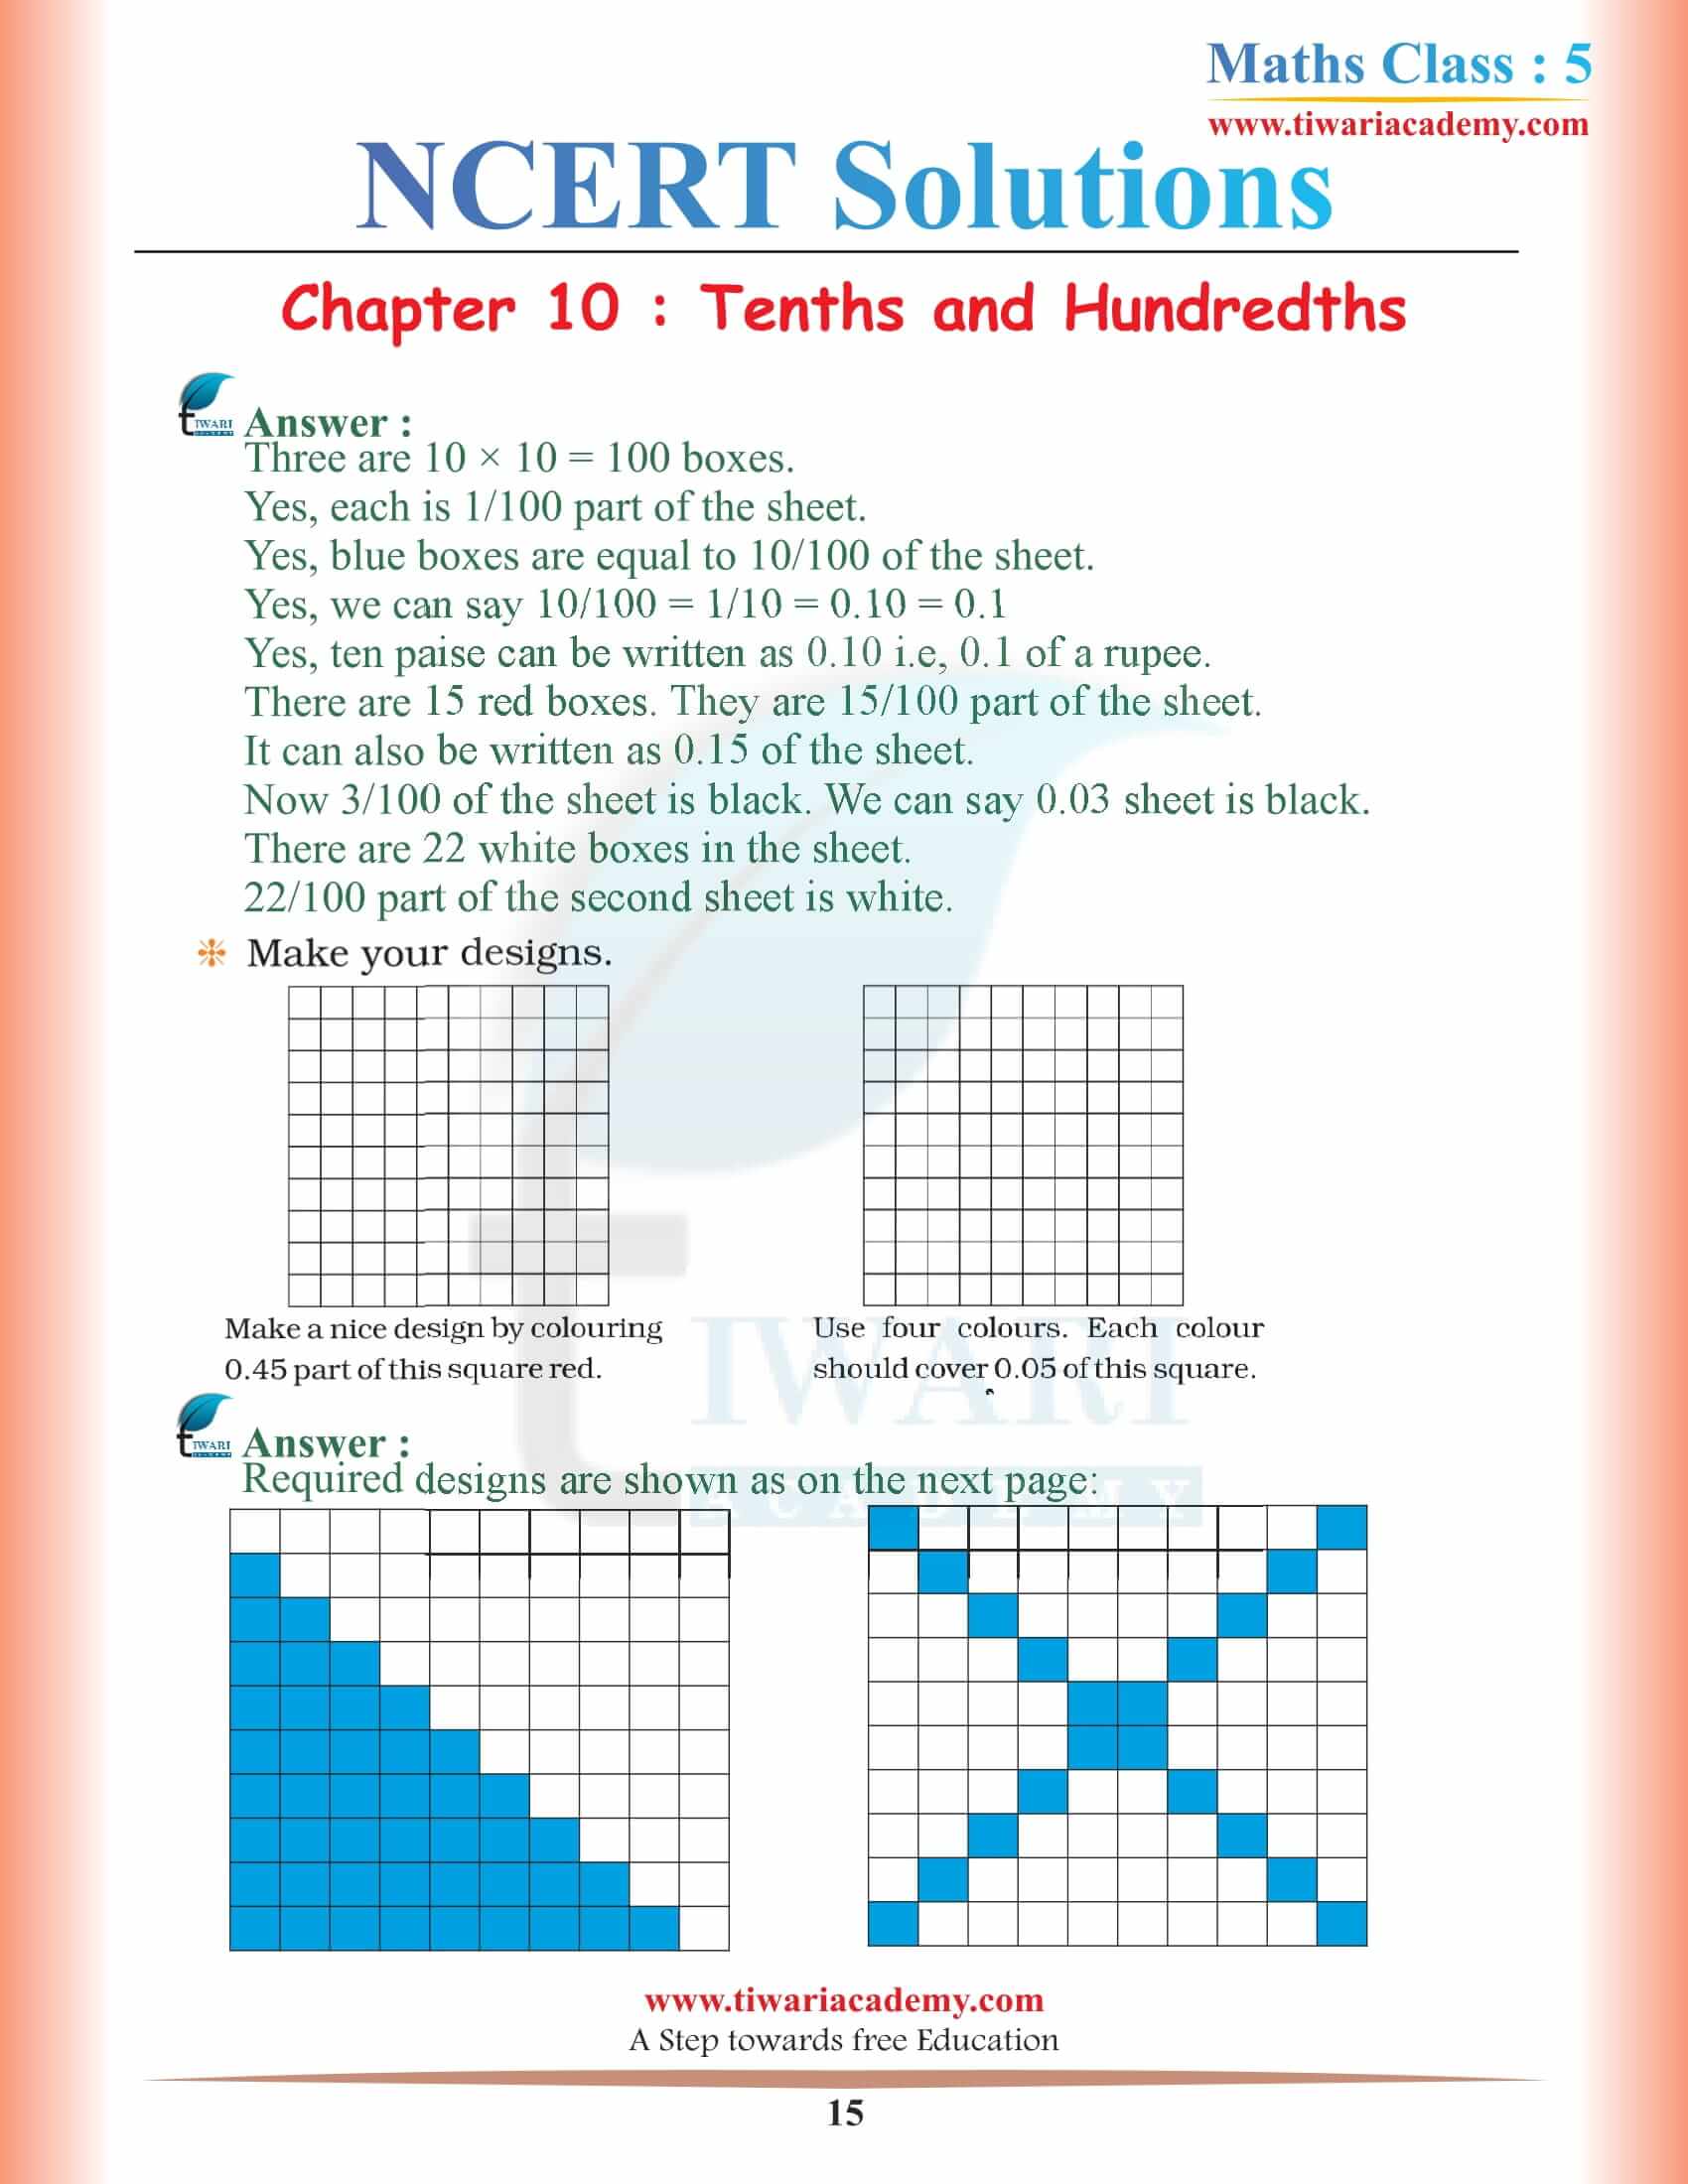 Class 5 Maths NCERT Chapter 10 Solution free